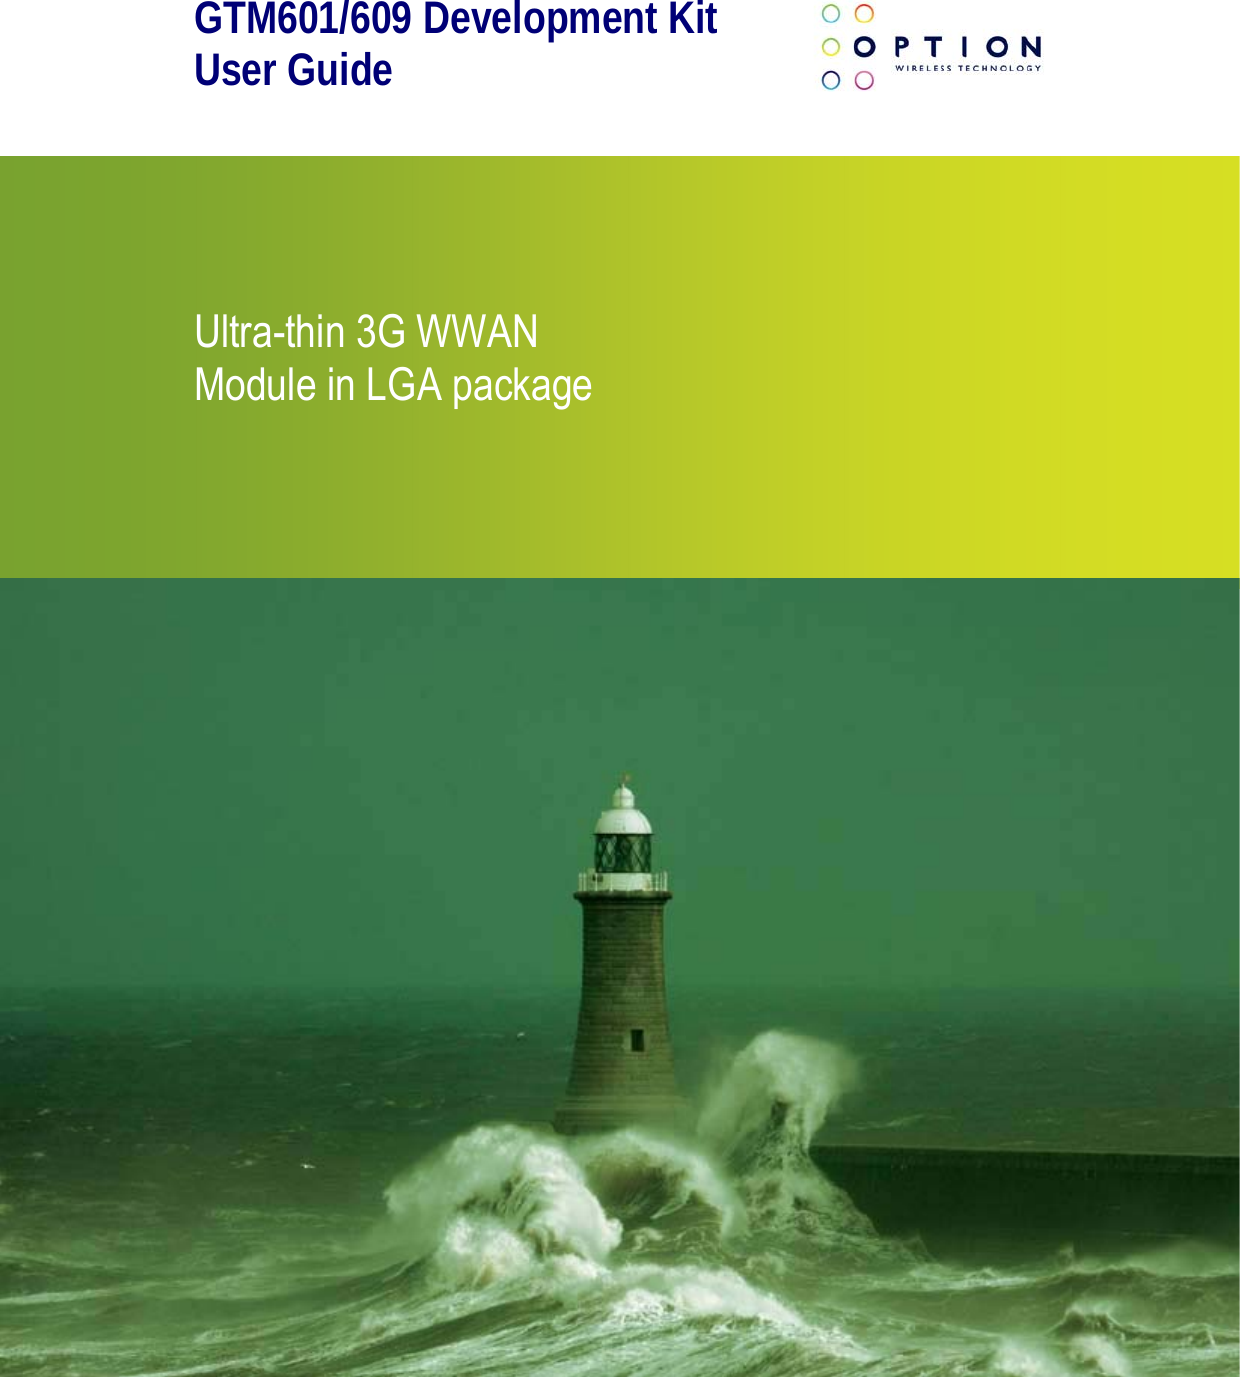 GTM601/609 Development Kit User Guide       Ultra-thin 3G WWAN Module in LGA package   